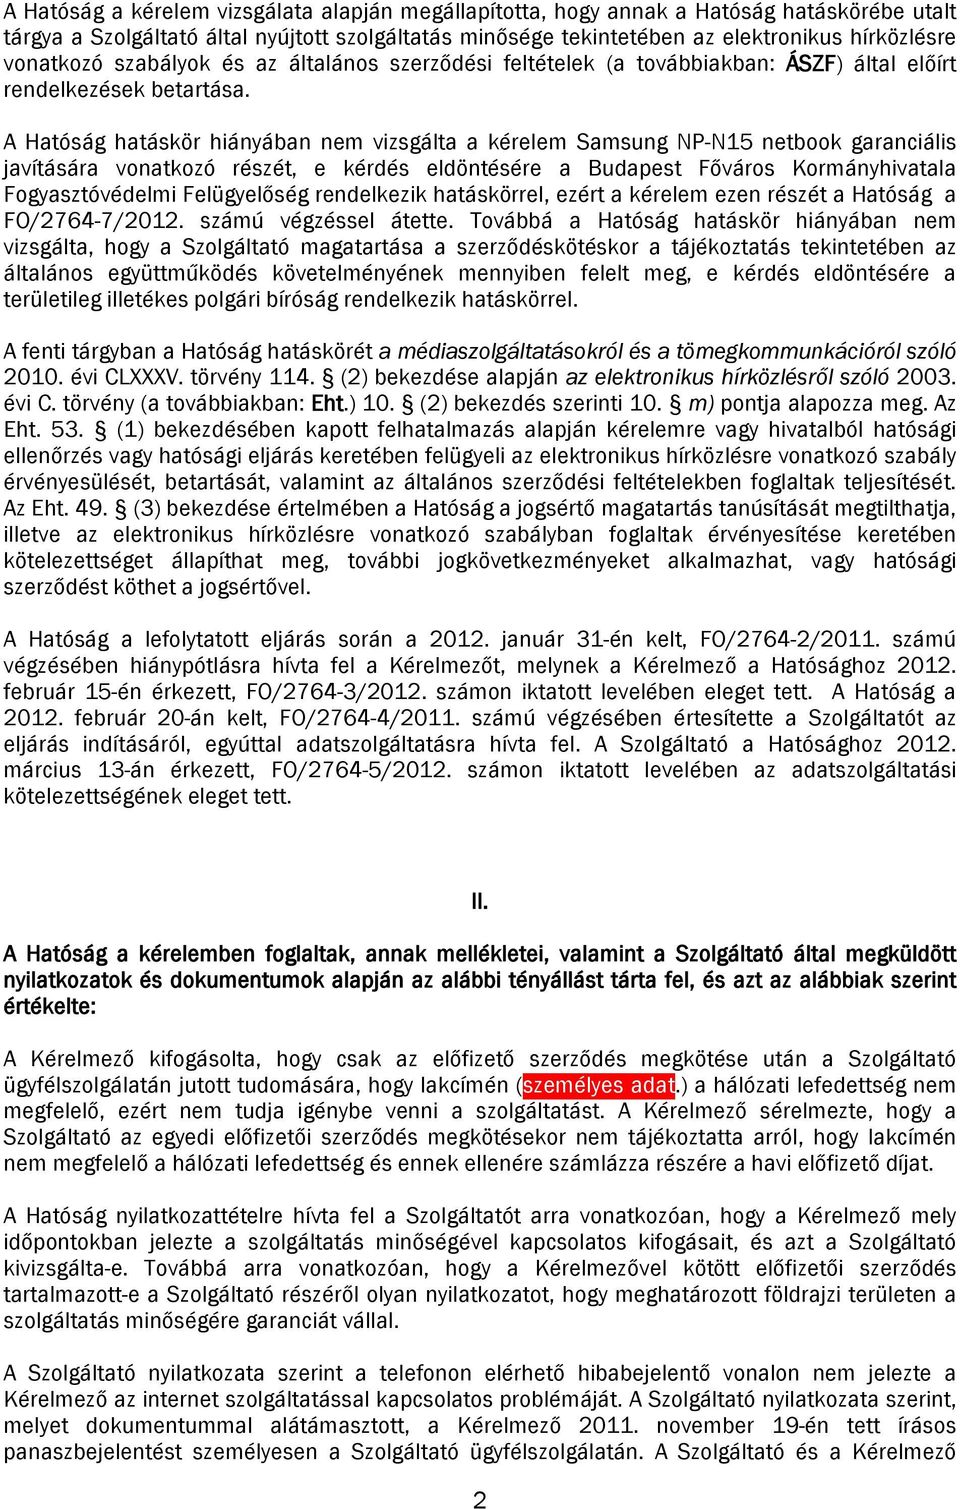 A Hatóság hatáskör hiányában nem vizsgálta a kérelem Samsung NP-N15 netbook garanciális javítására vonatkozó részét, e kérdés eldöntésére a Budapest Főváros Kormányhivatala Fogyasztóvédelmi